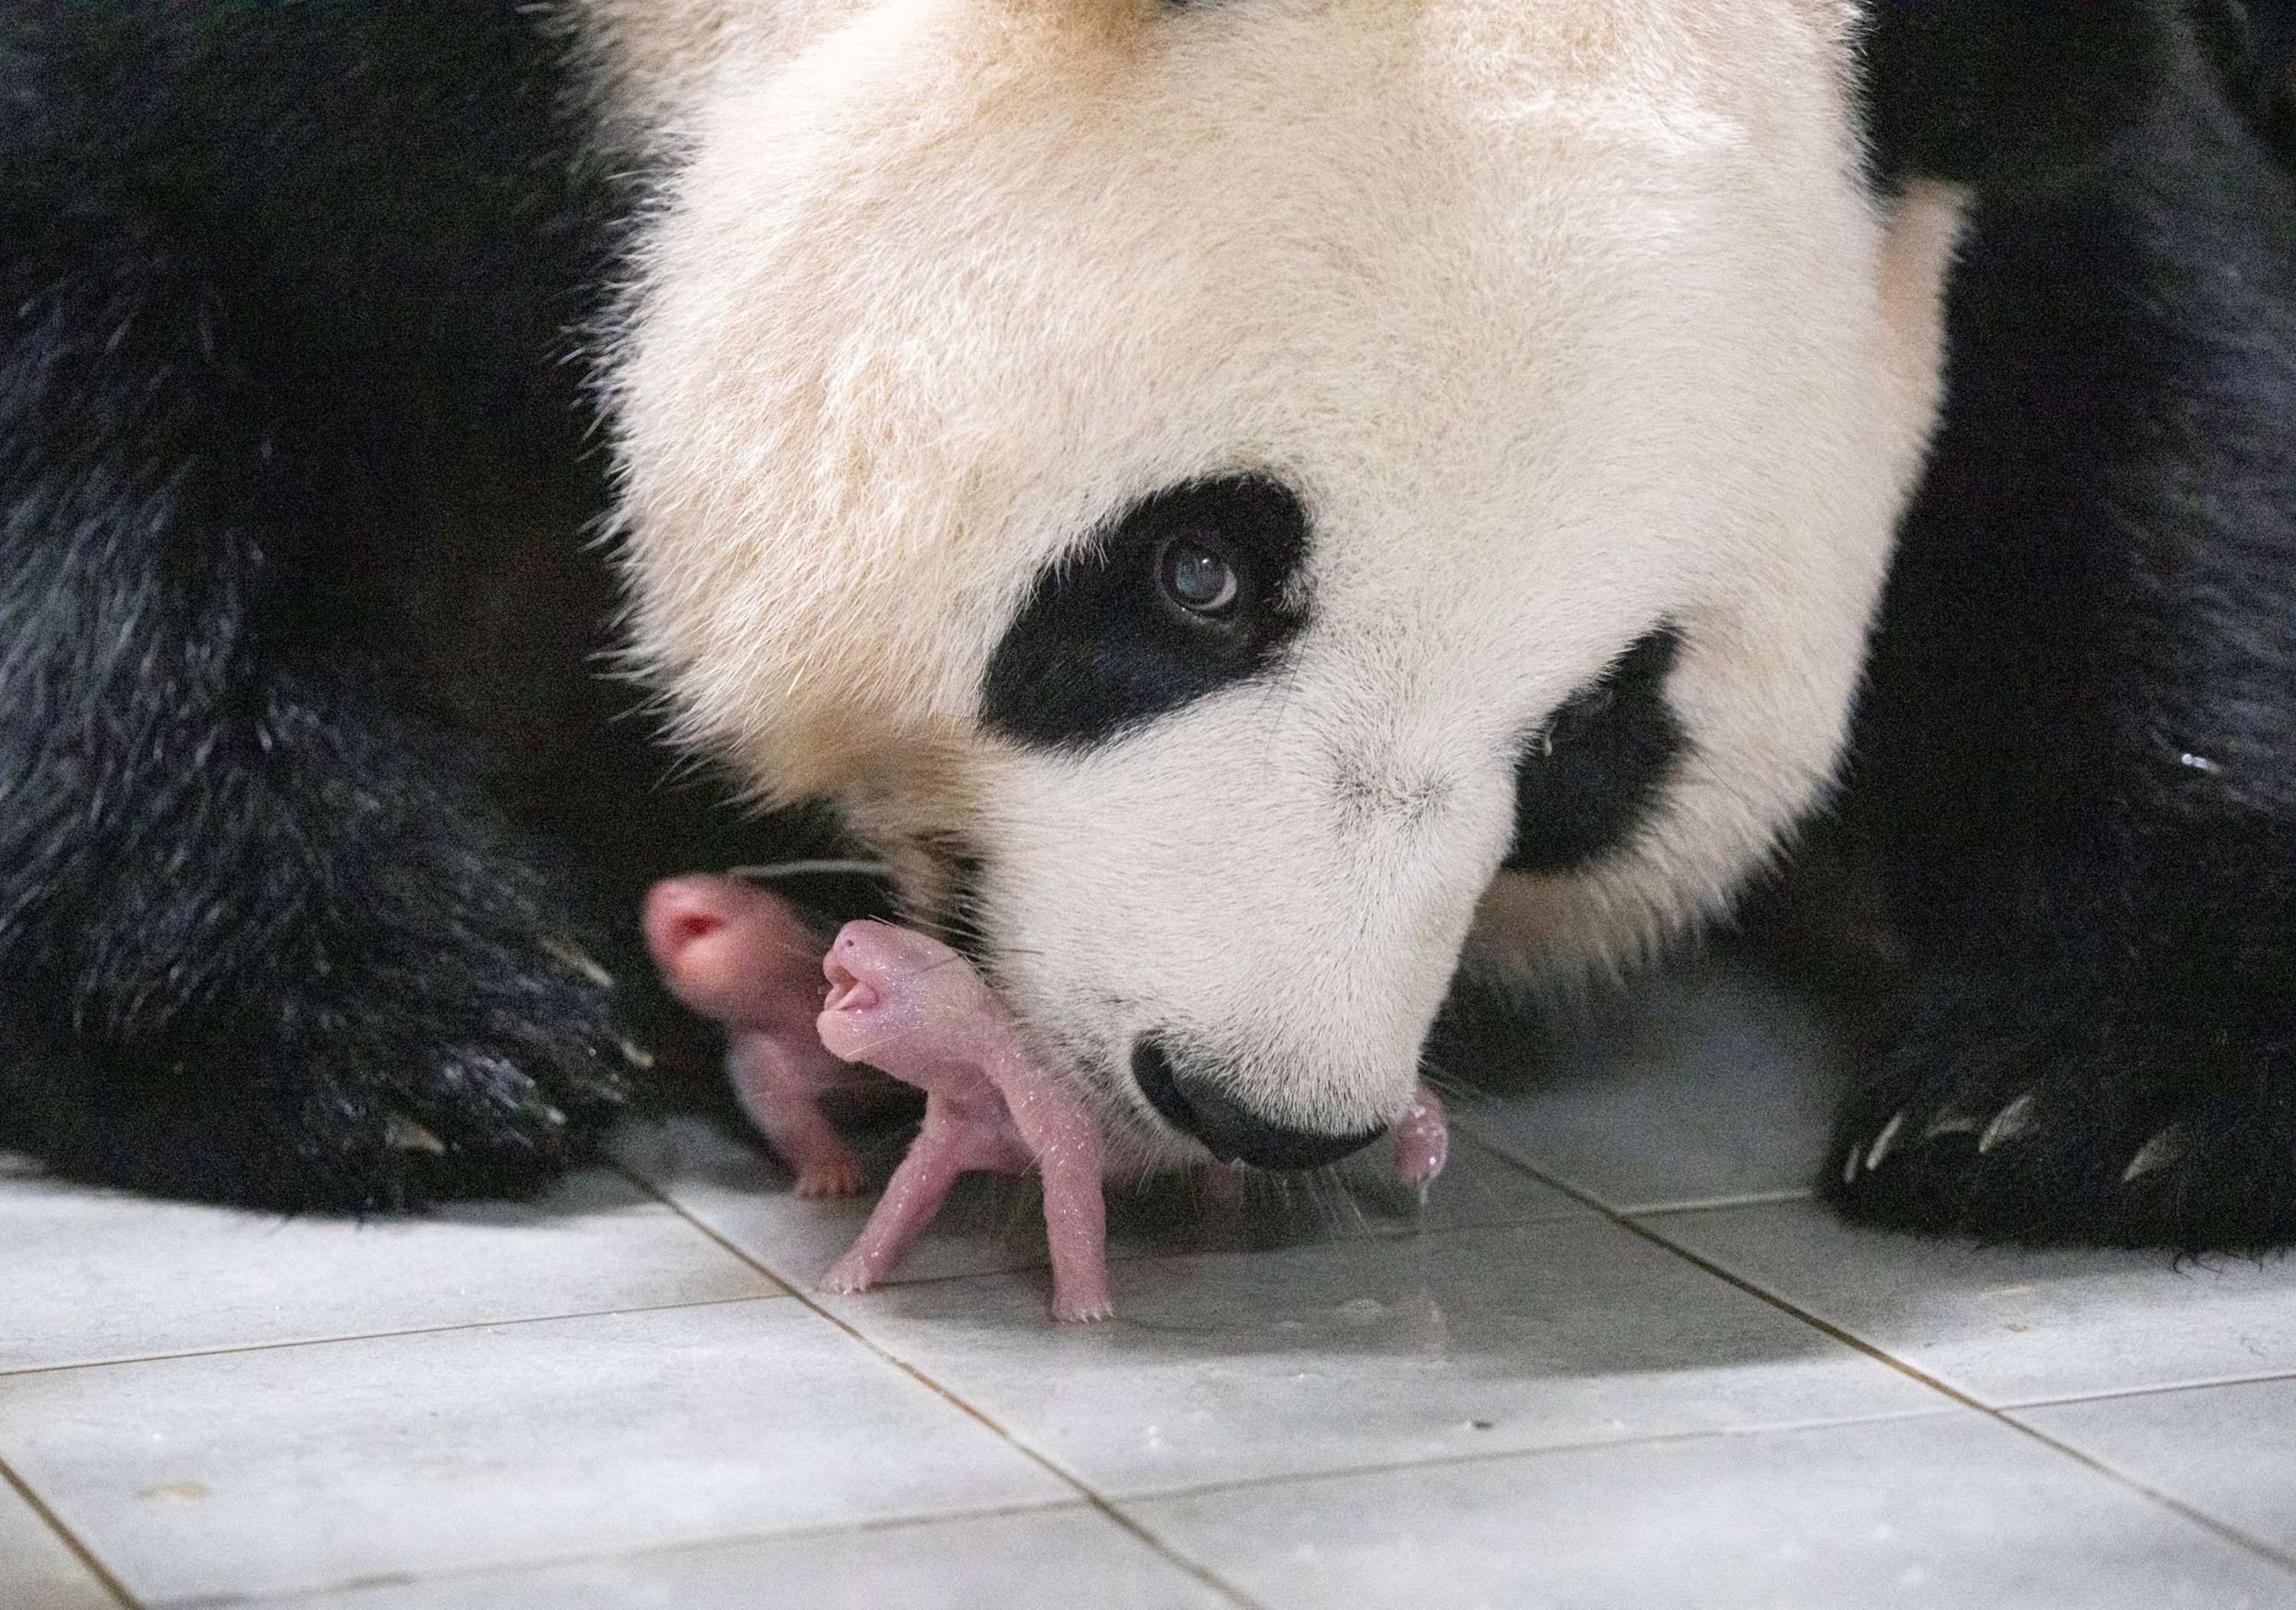 bebe panda